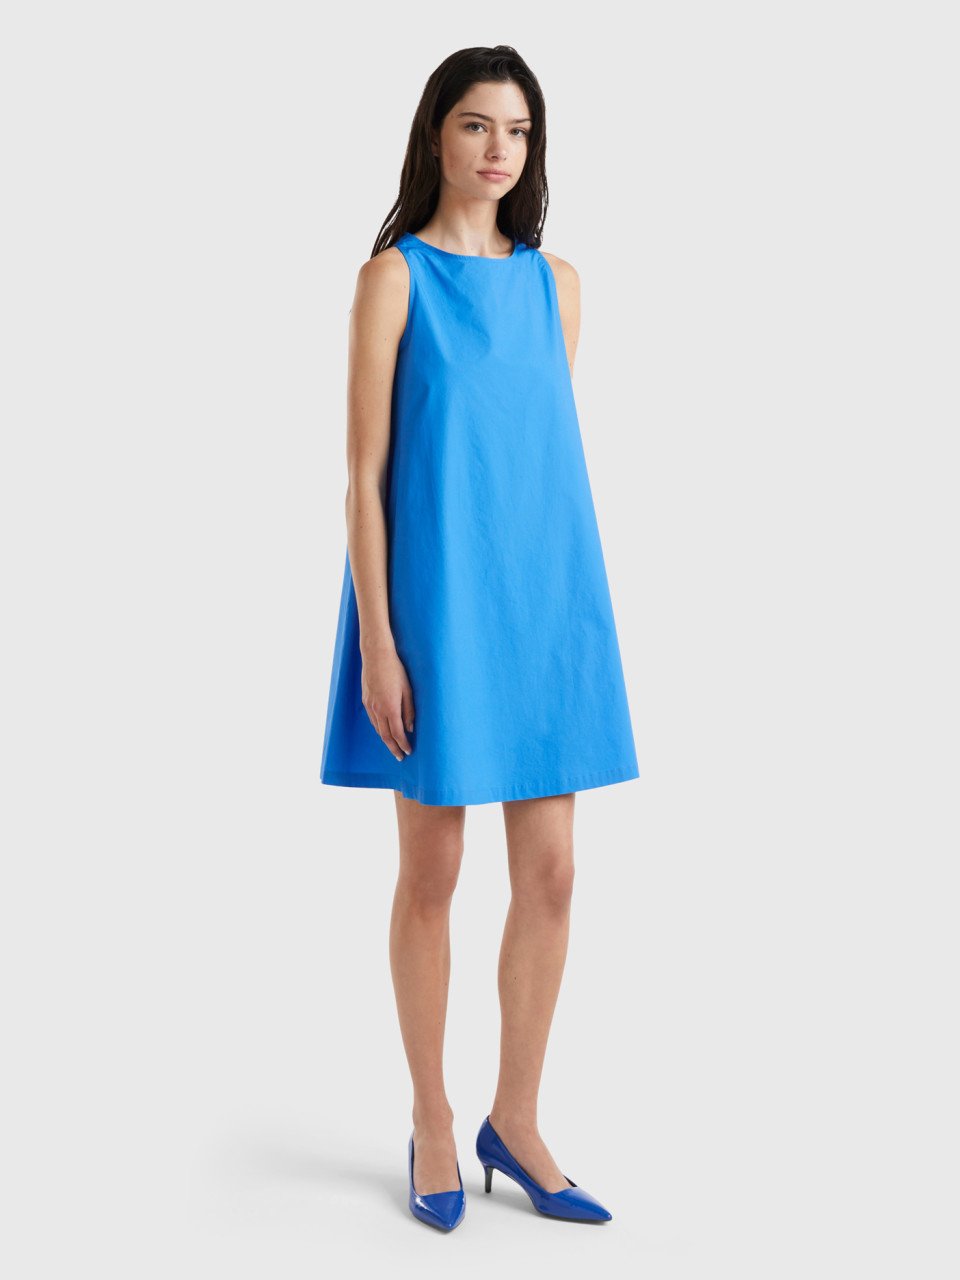 Benetton, Sleeveless Trapeze Dress, Blue, Women